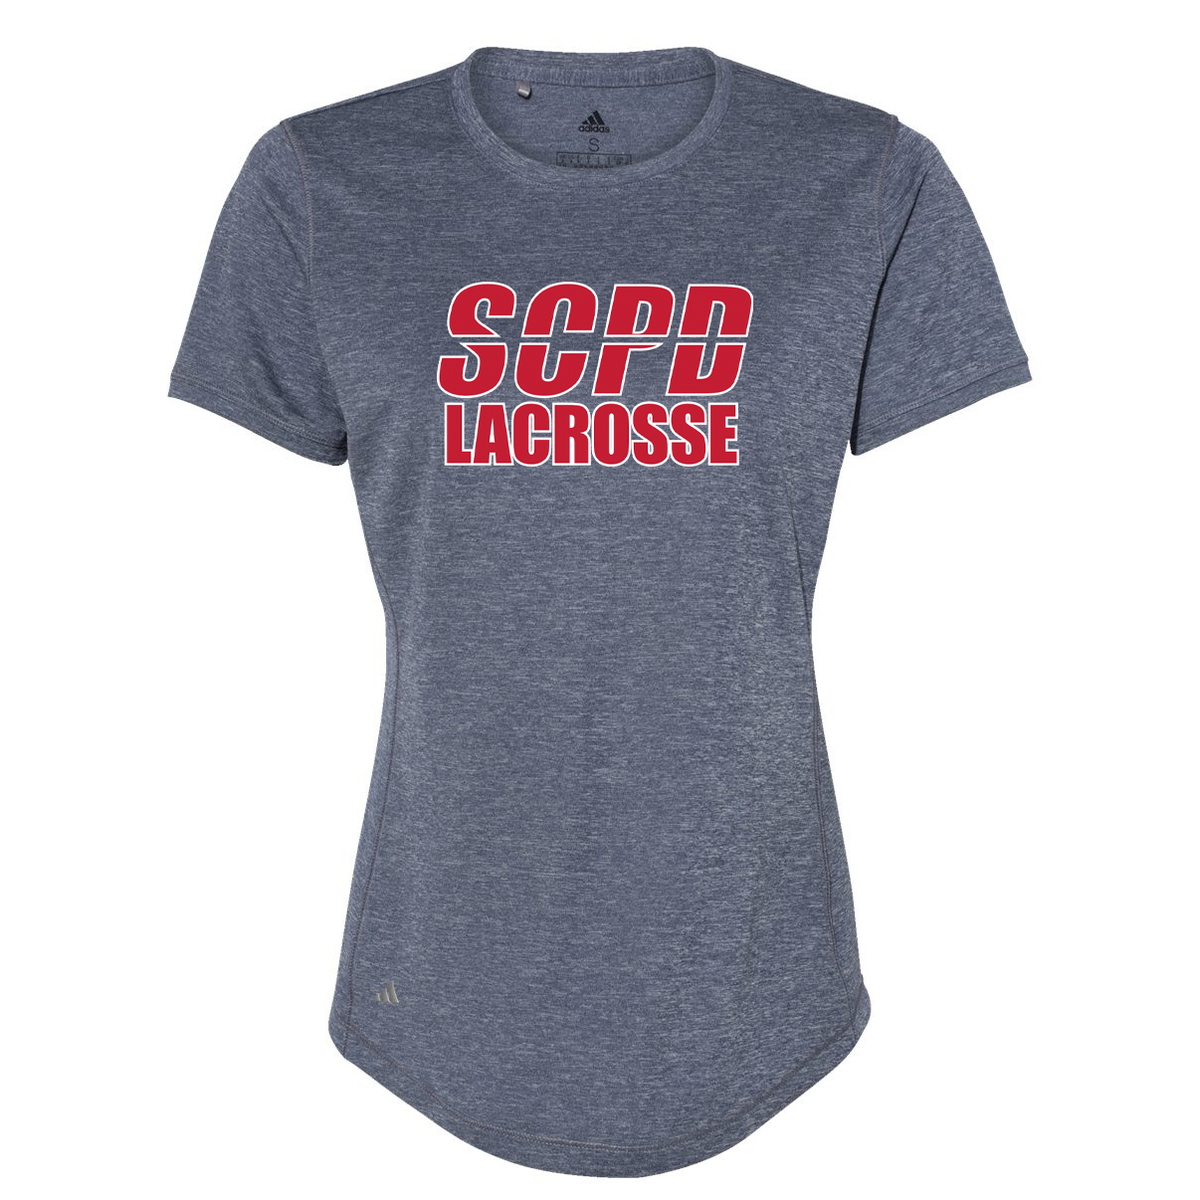 SCPD Lacrosse Women's Adidas Sport T-Shirt